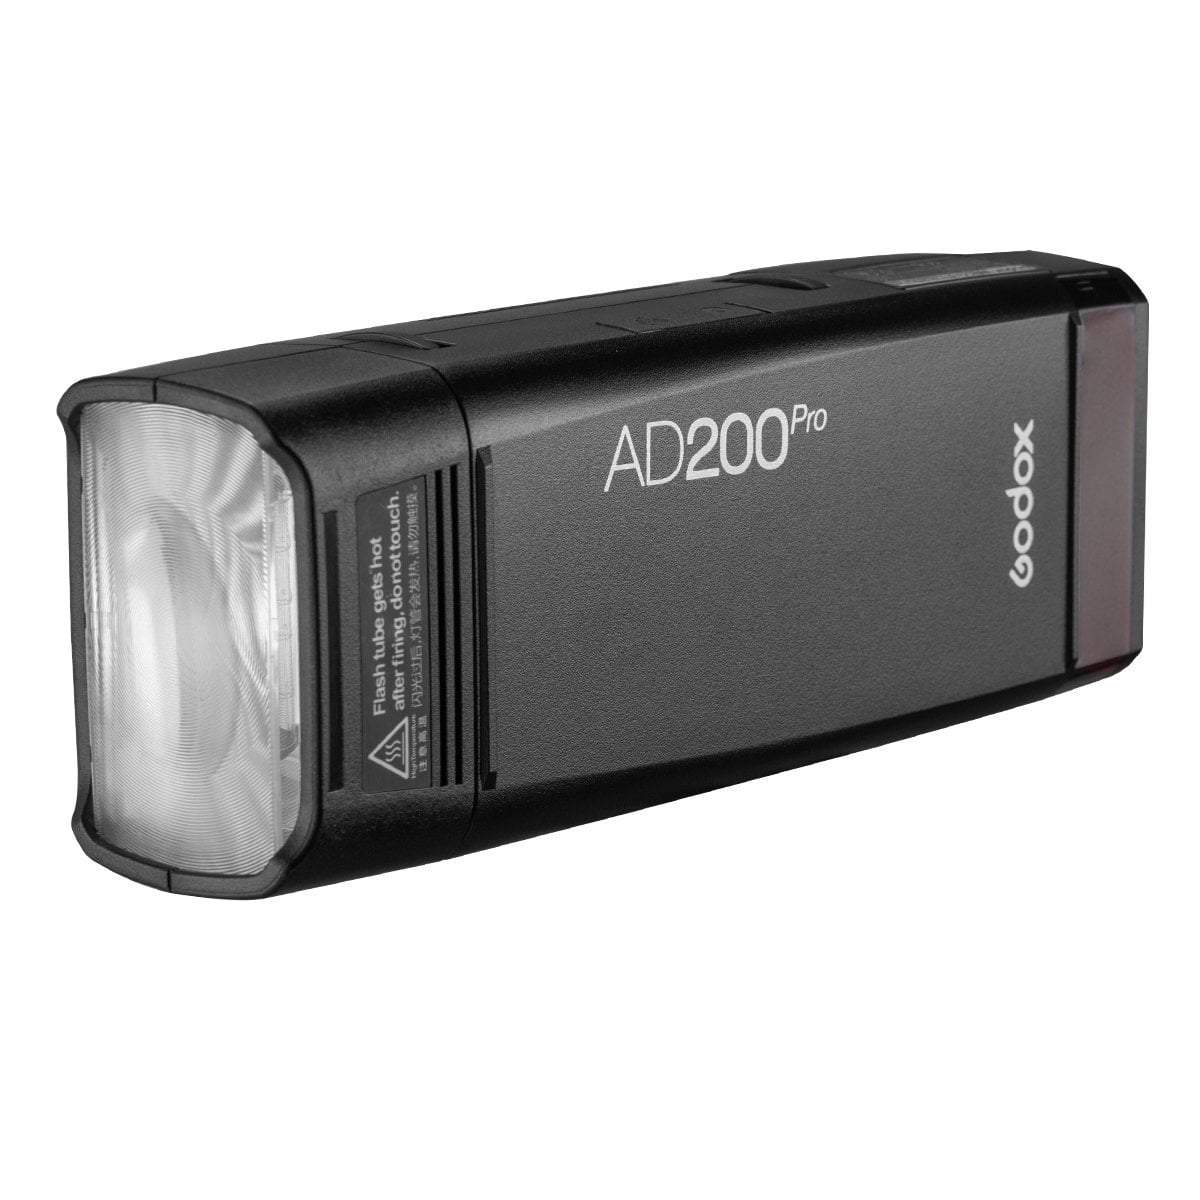 Godox AD200 Pro TTL Battery Powered Wireless Strobe - Strobepro Studio Lighting